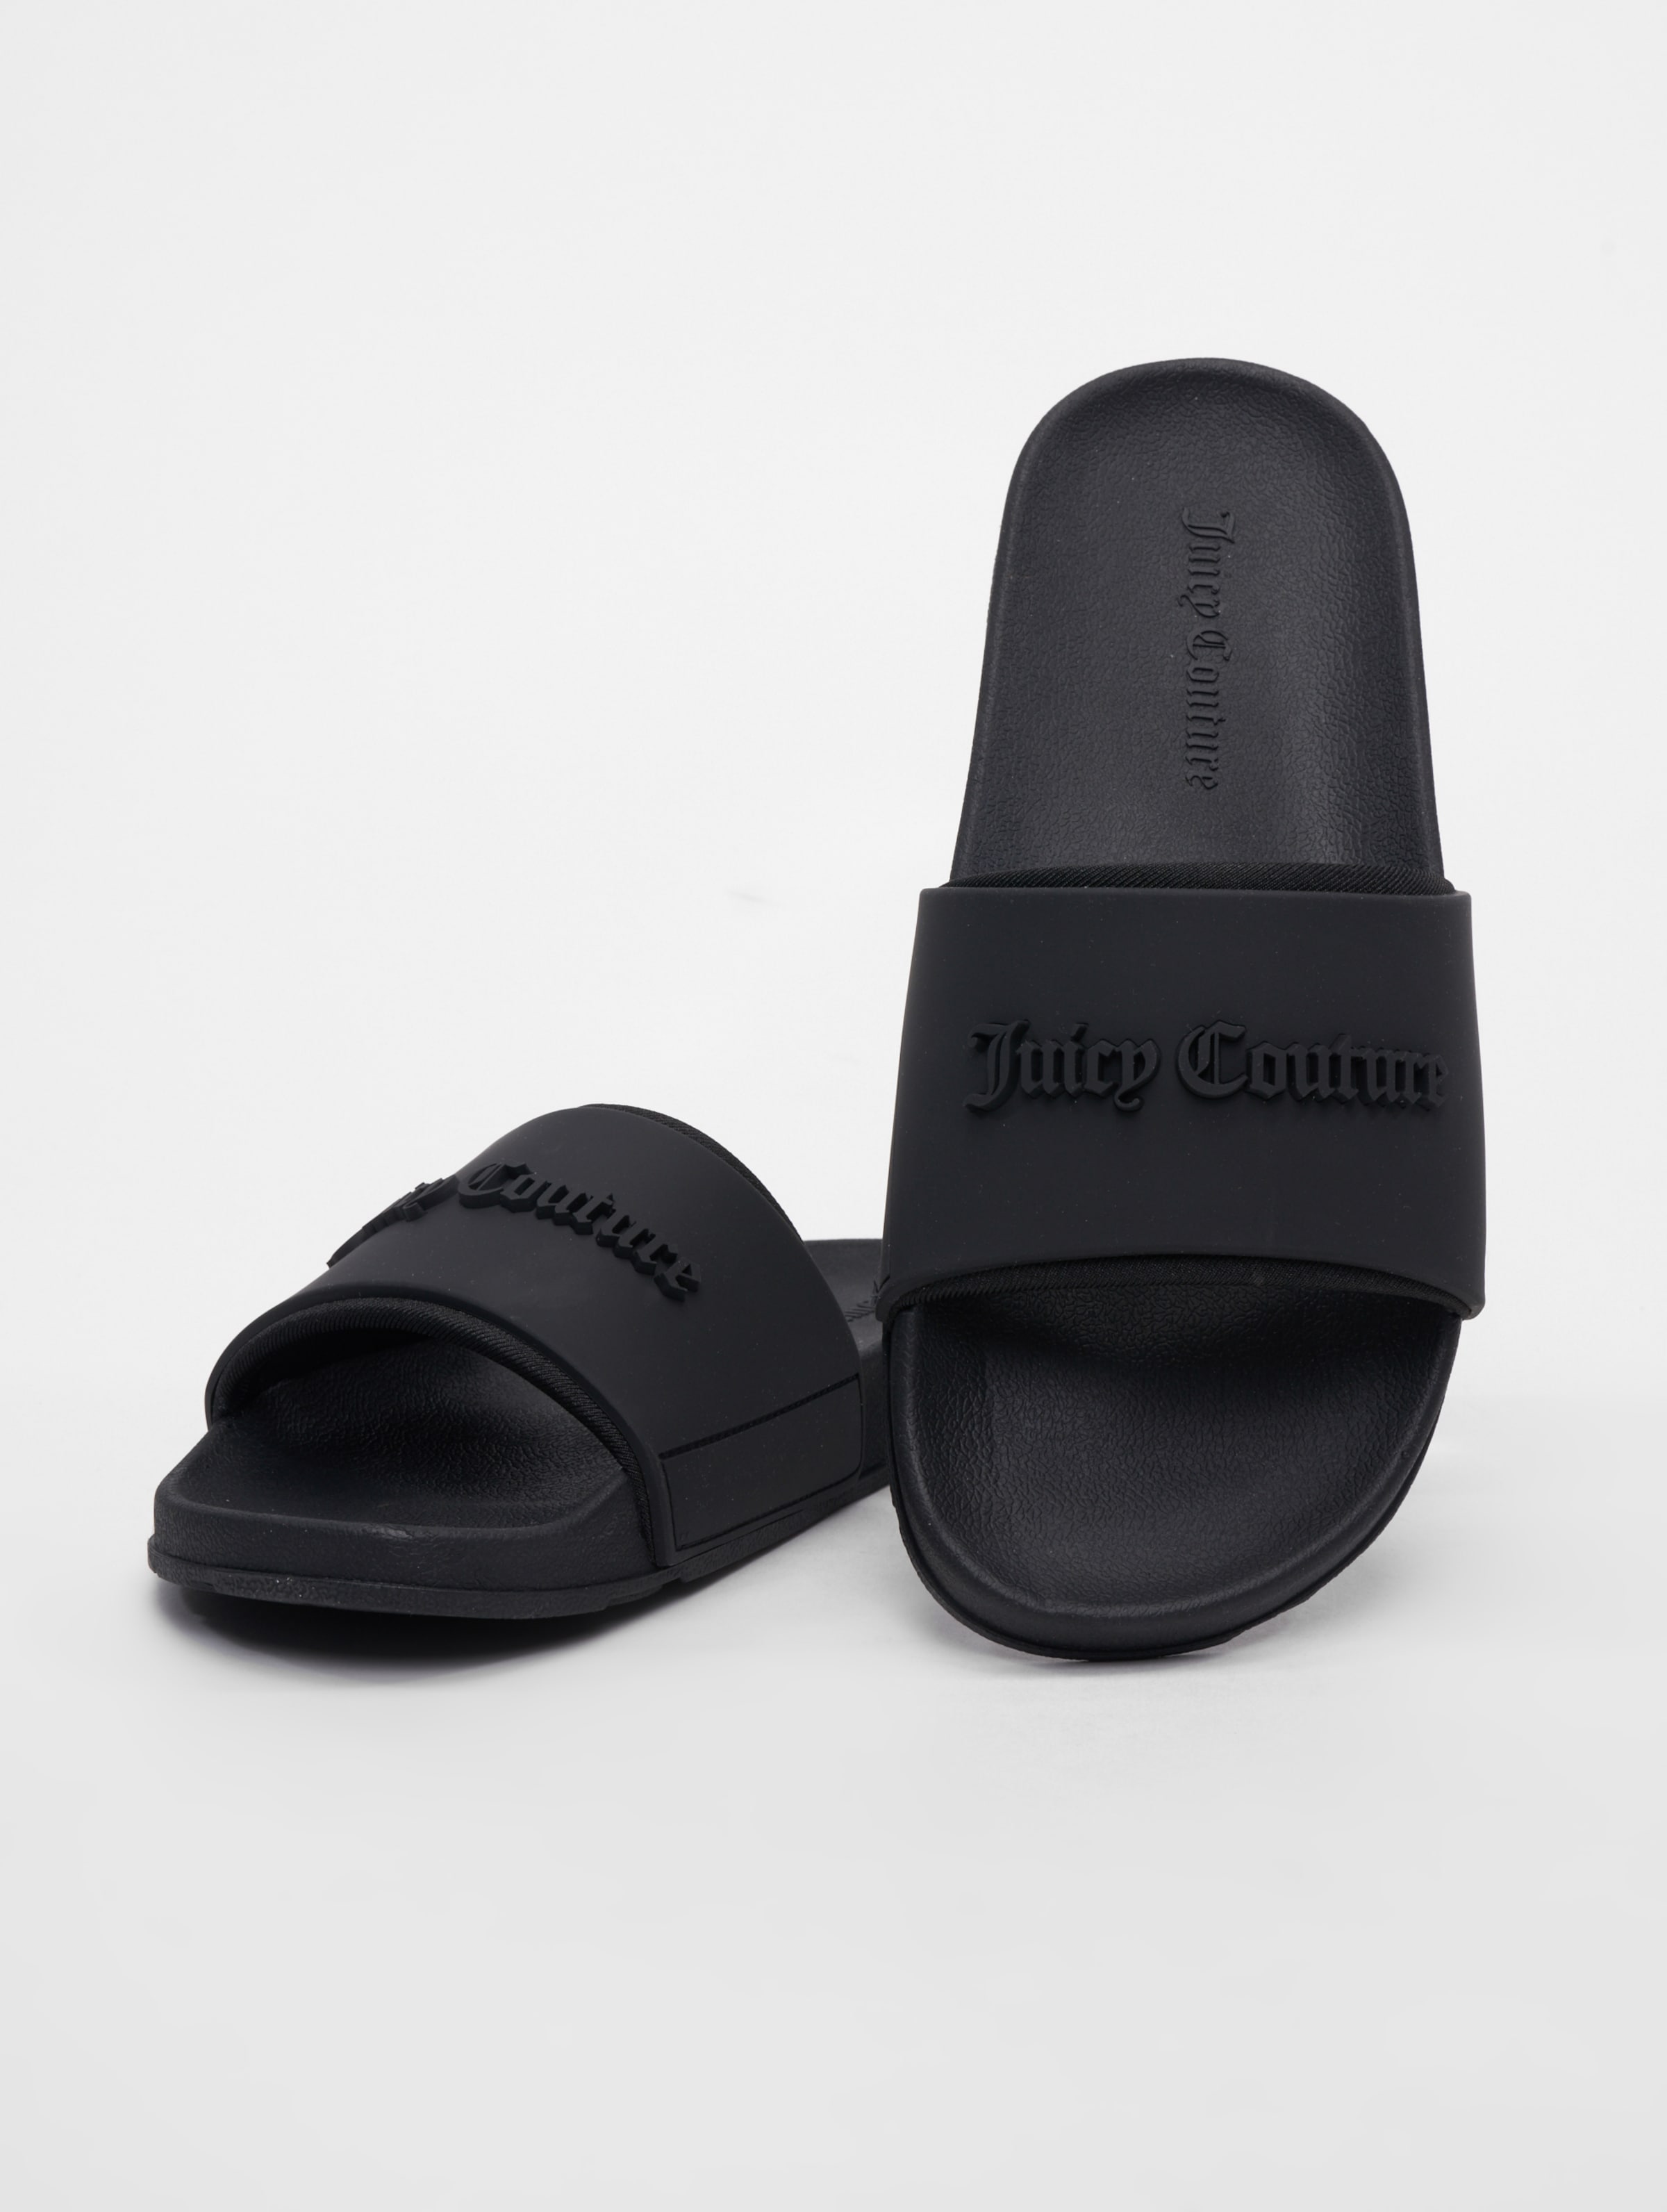 Juicy Couture Breanna Embrosse Sandalen Frauen,Unisex op kleur zwart, Maat 41